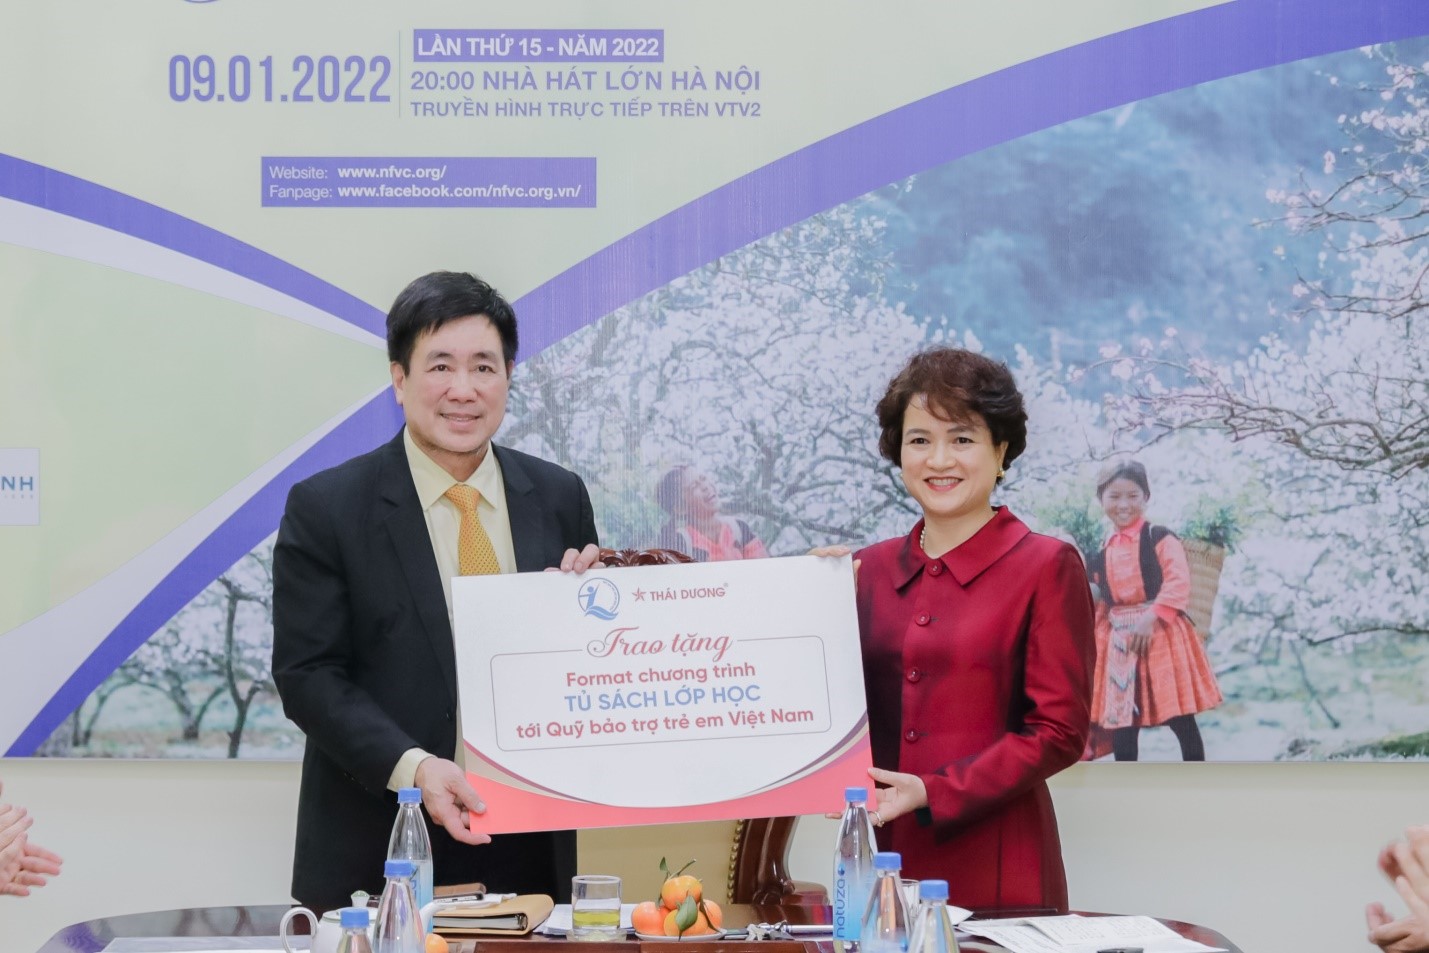 Bà Nguyễn Thị Hương Liên – Phó Tổng Giám đốc Công ty Cổ phần Sao Thái Dương đã trao tặng Format chương trình Tủ sách lớp học tới Quỹ Bảo trợ trẻ em Việt Nam.